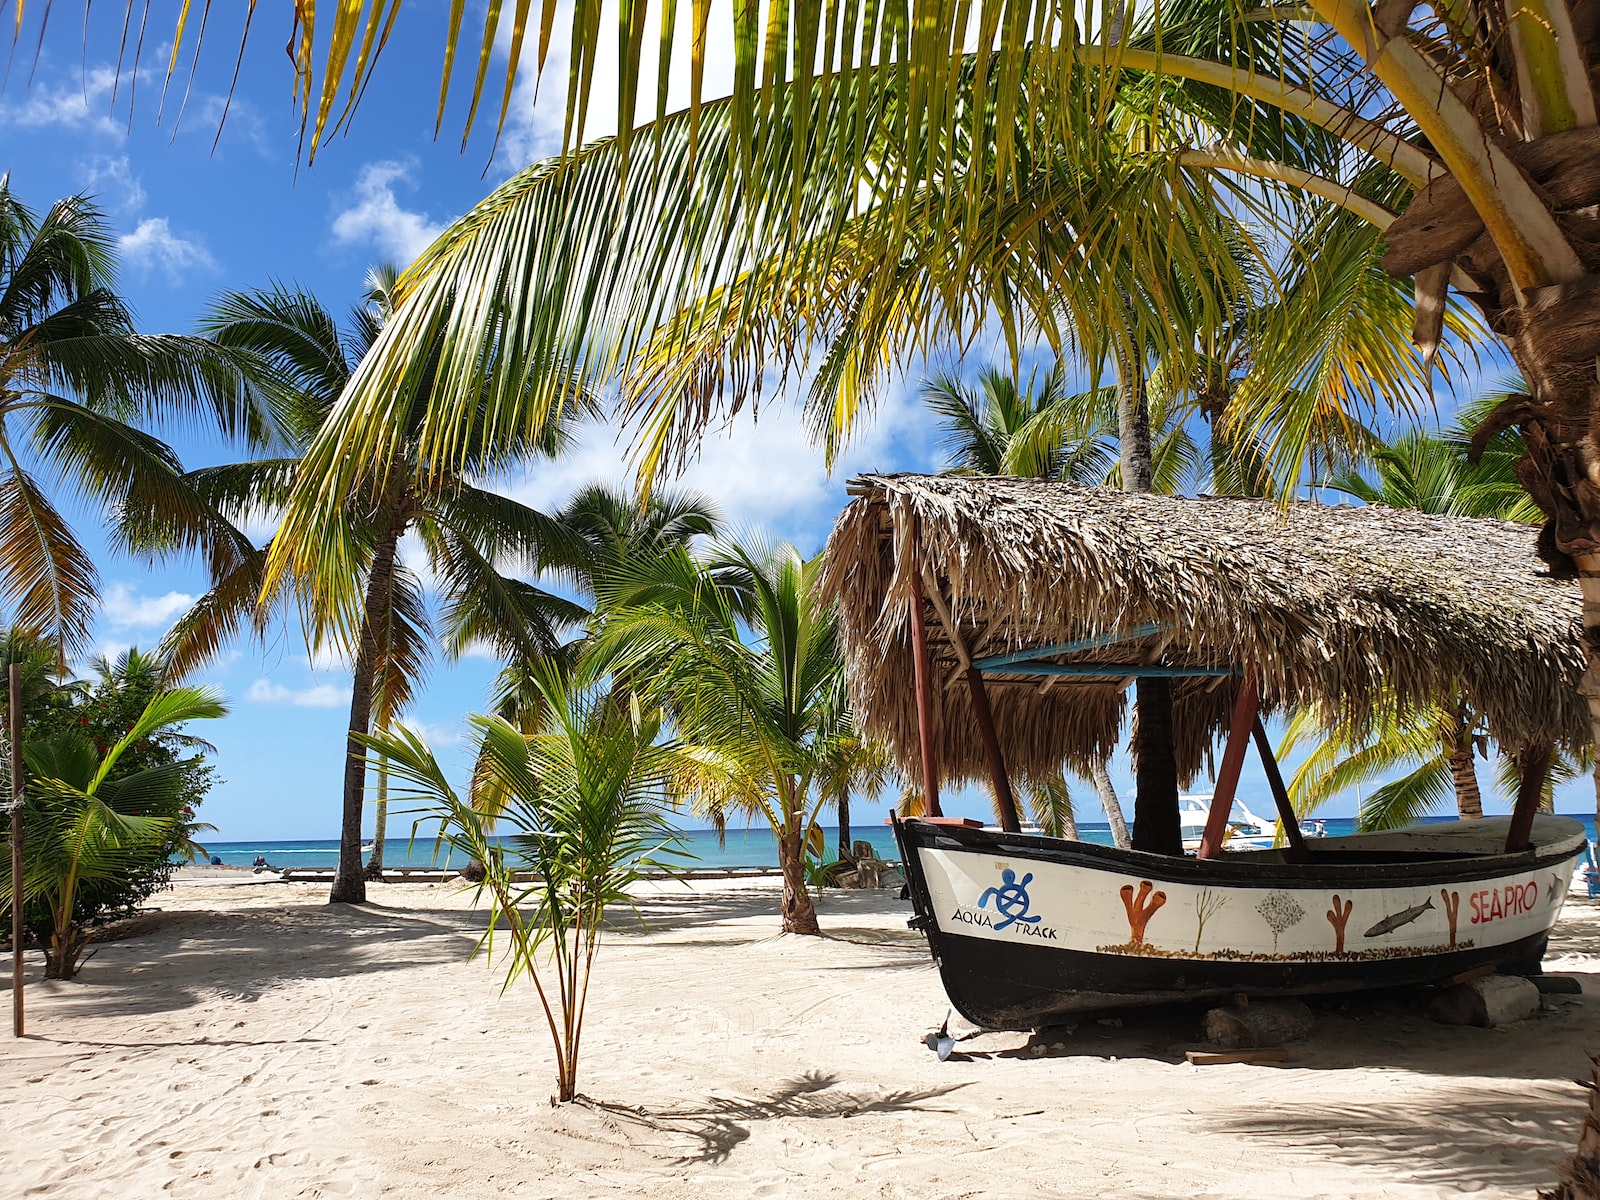 Île de Saona - République dominicaine : 5 bonnes raisons de faire une excursion